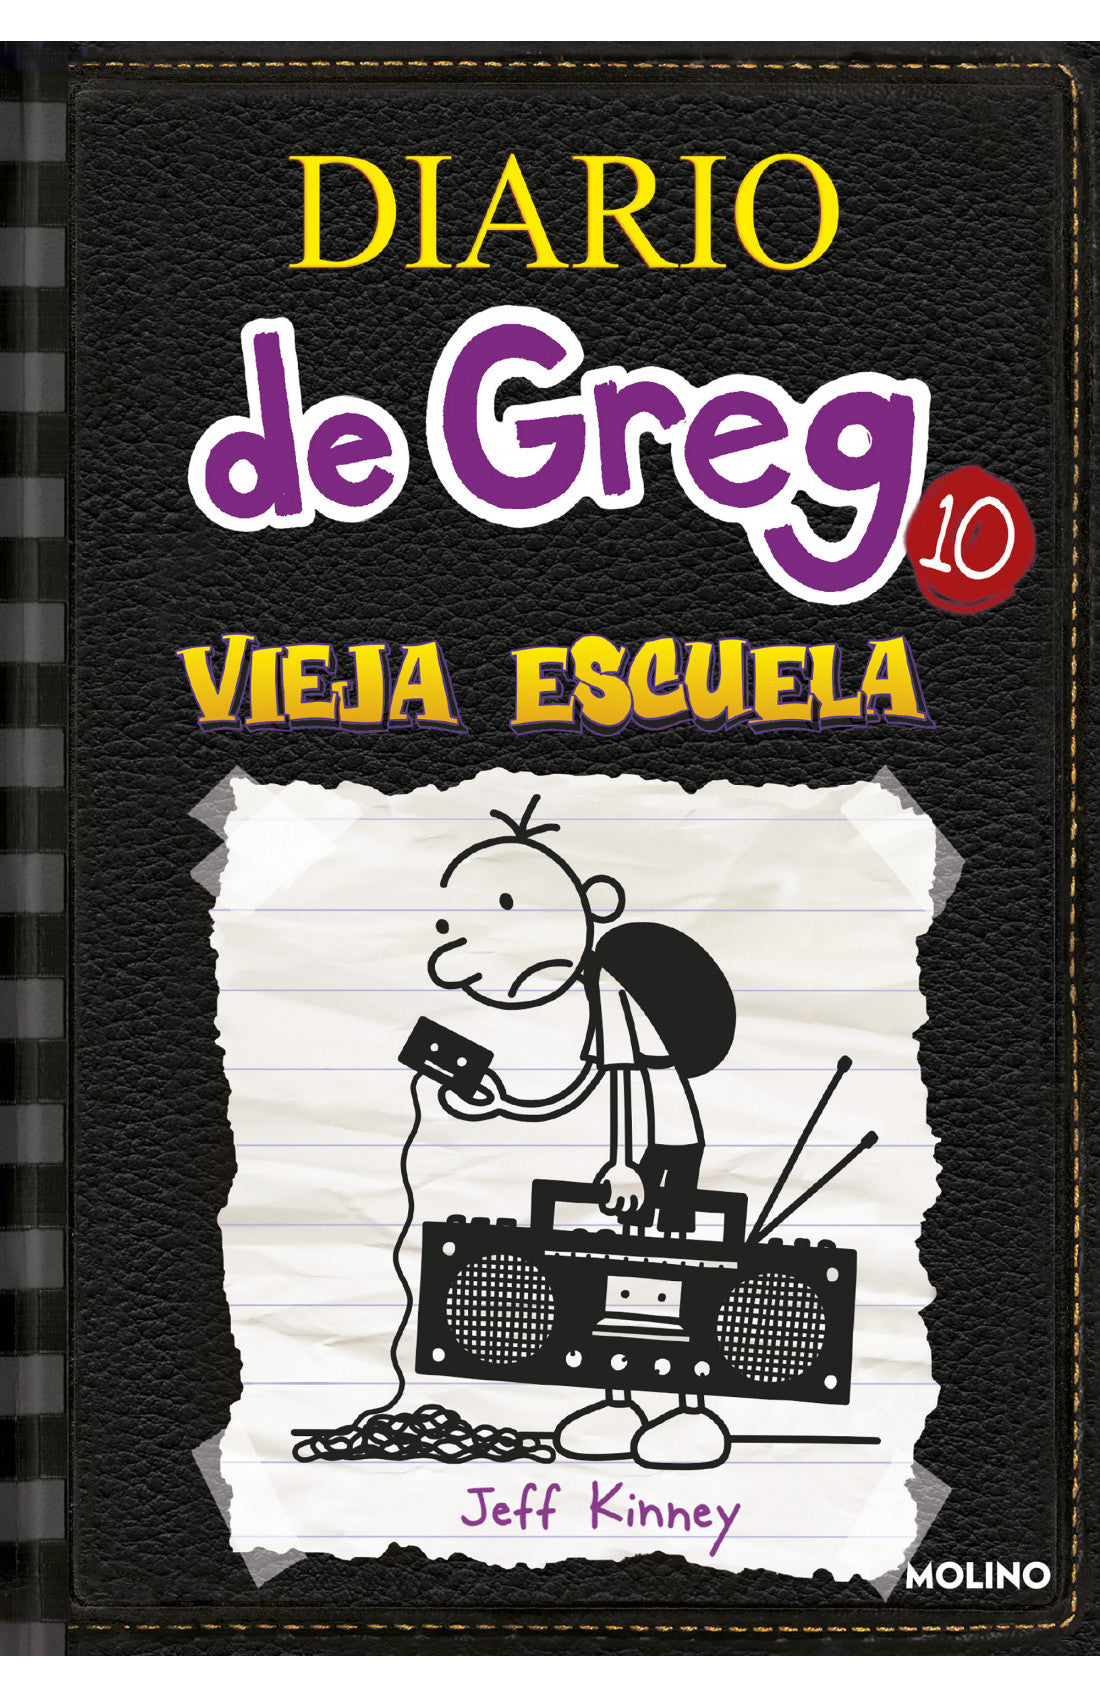 Vieja escuela - Diario de Greg 10 (Tapa dura)